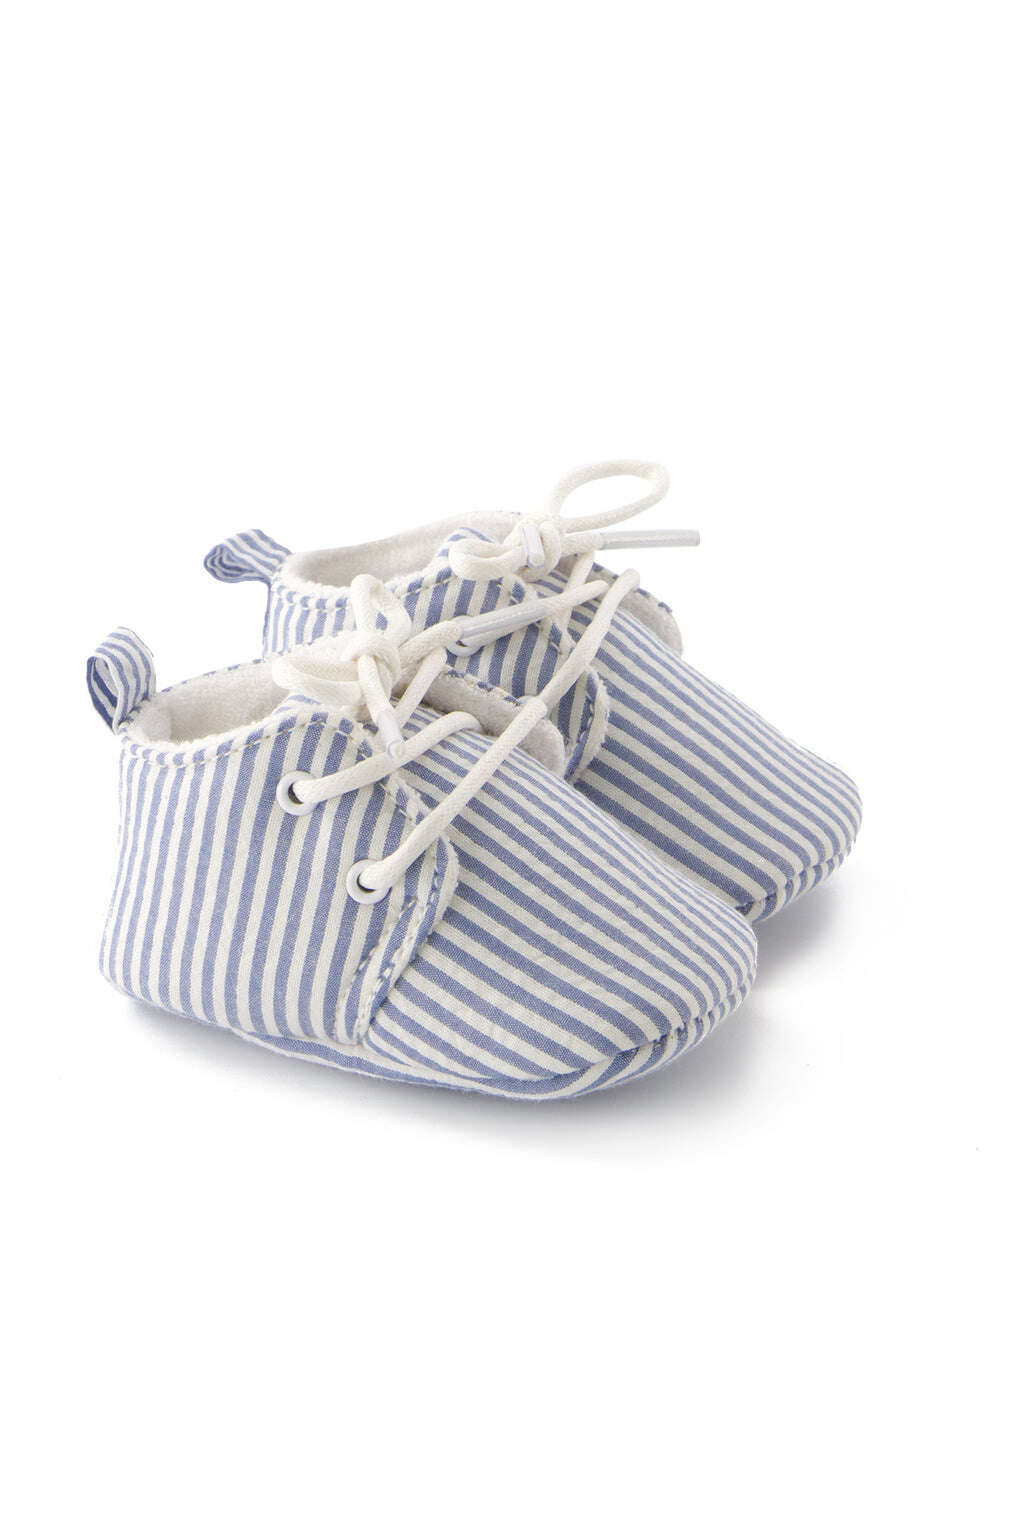 Shoes - Azure Stripes